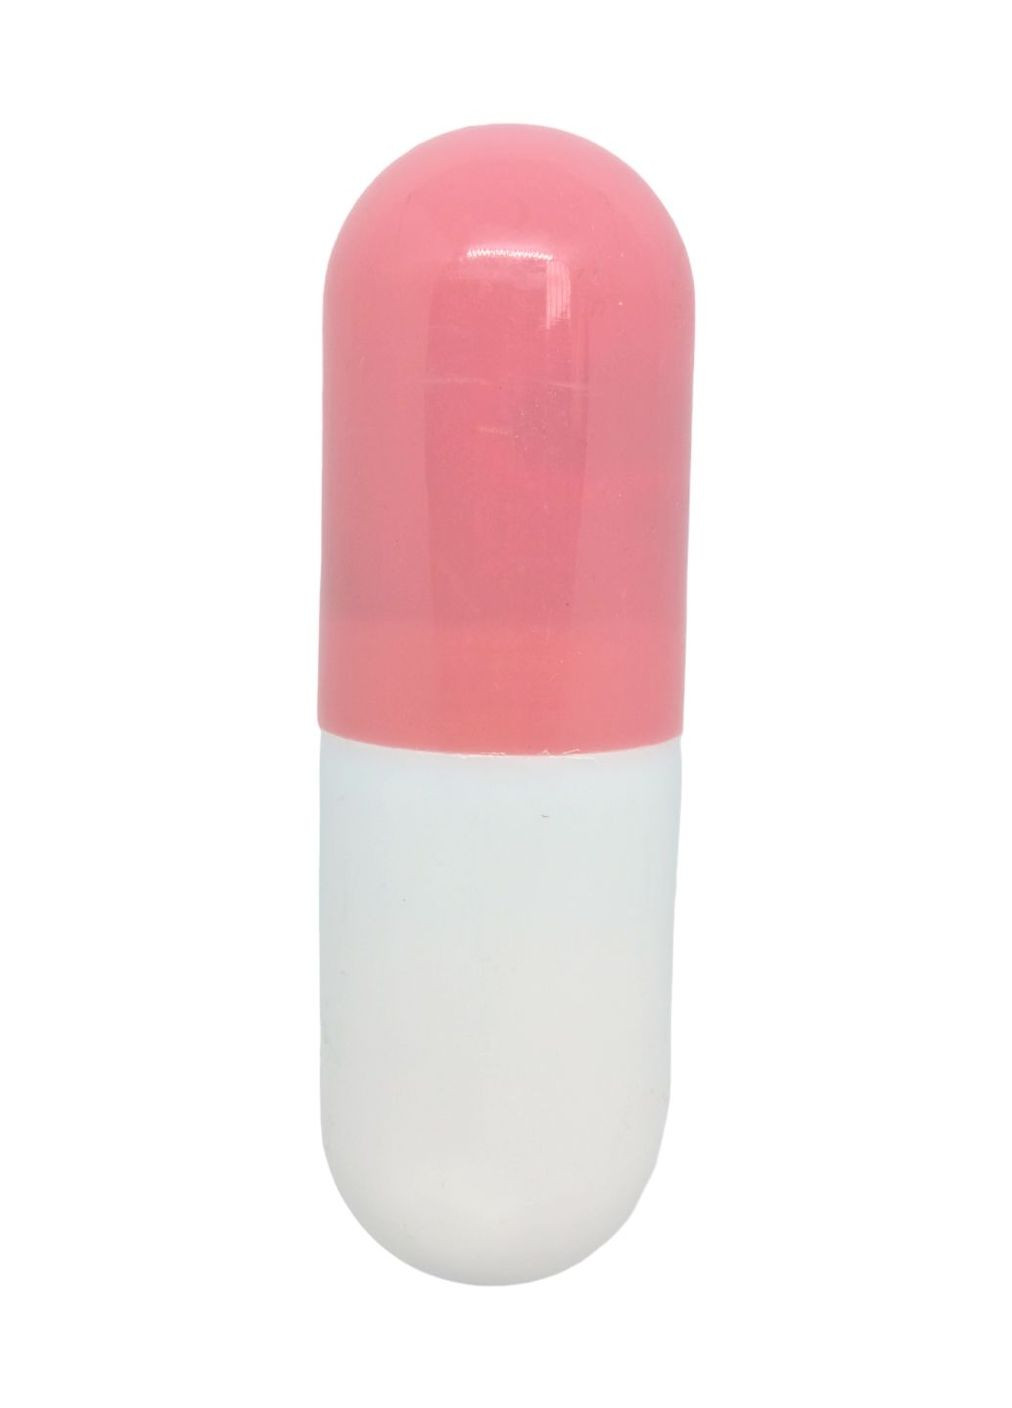 Зонт в капсуле футляре раскладной 90 х 90 х 50 см женский мини карманный зонтик розовый No Brand (270016428)